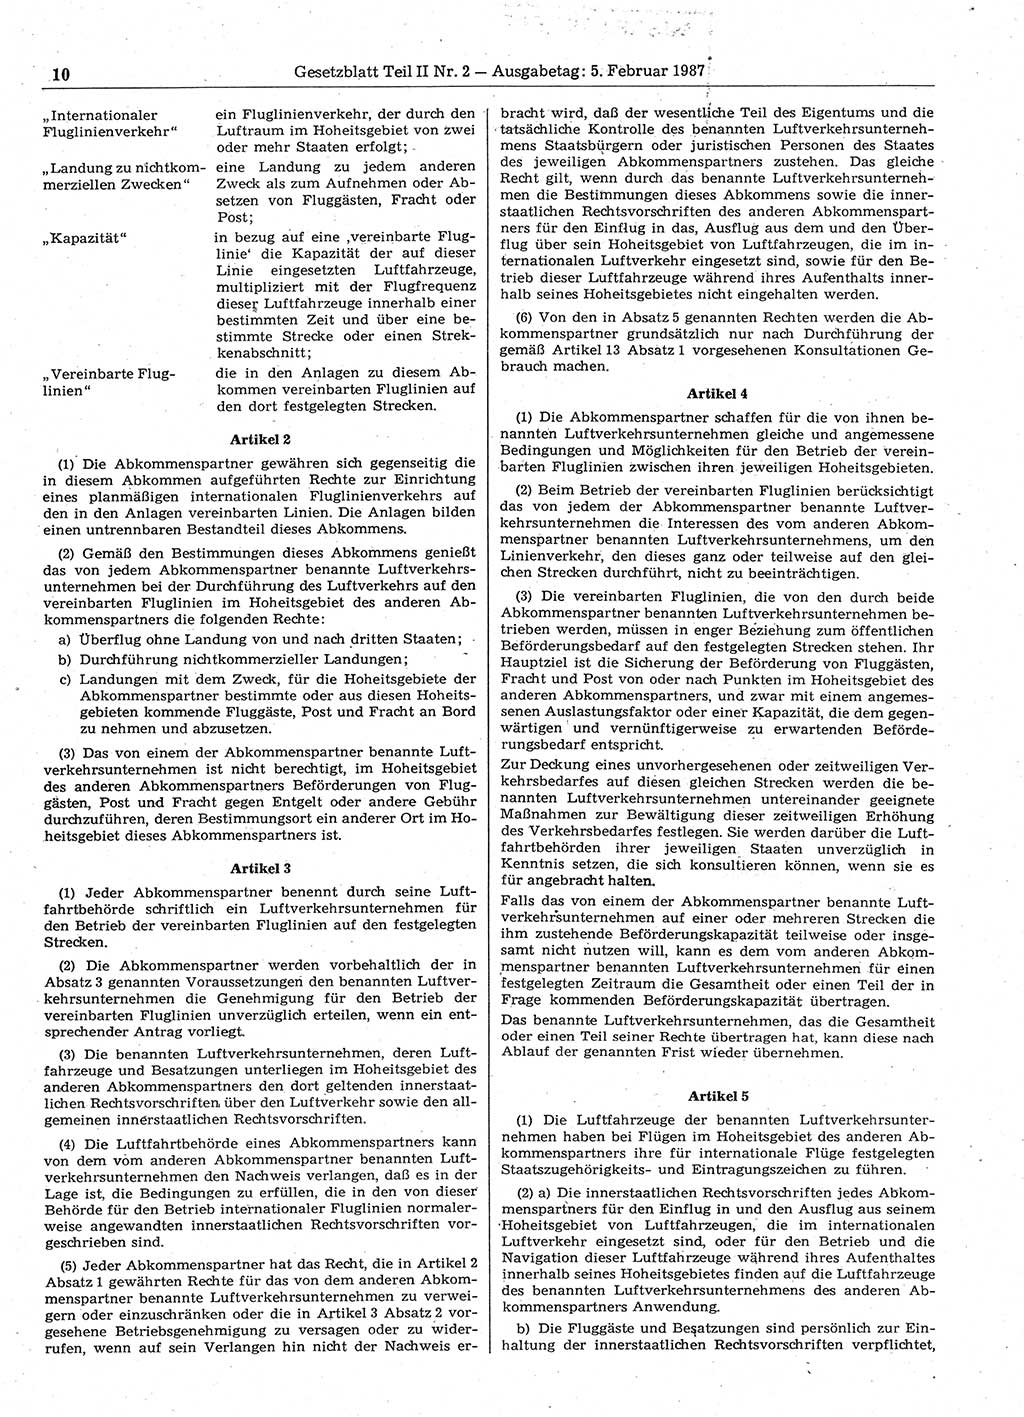 Gesetzblatt (GBl.) der Deutschen Demokratischen Republik (DDR) Teil ⅠⅠ 1987, Seite 10 (GBl. DDR ⅠⅠ 1987, S. 10)